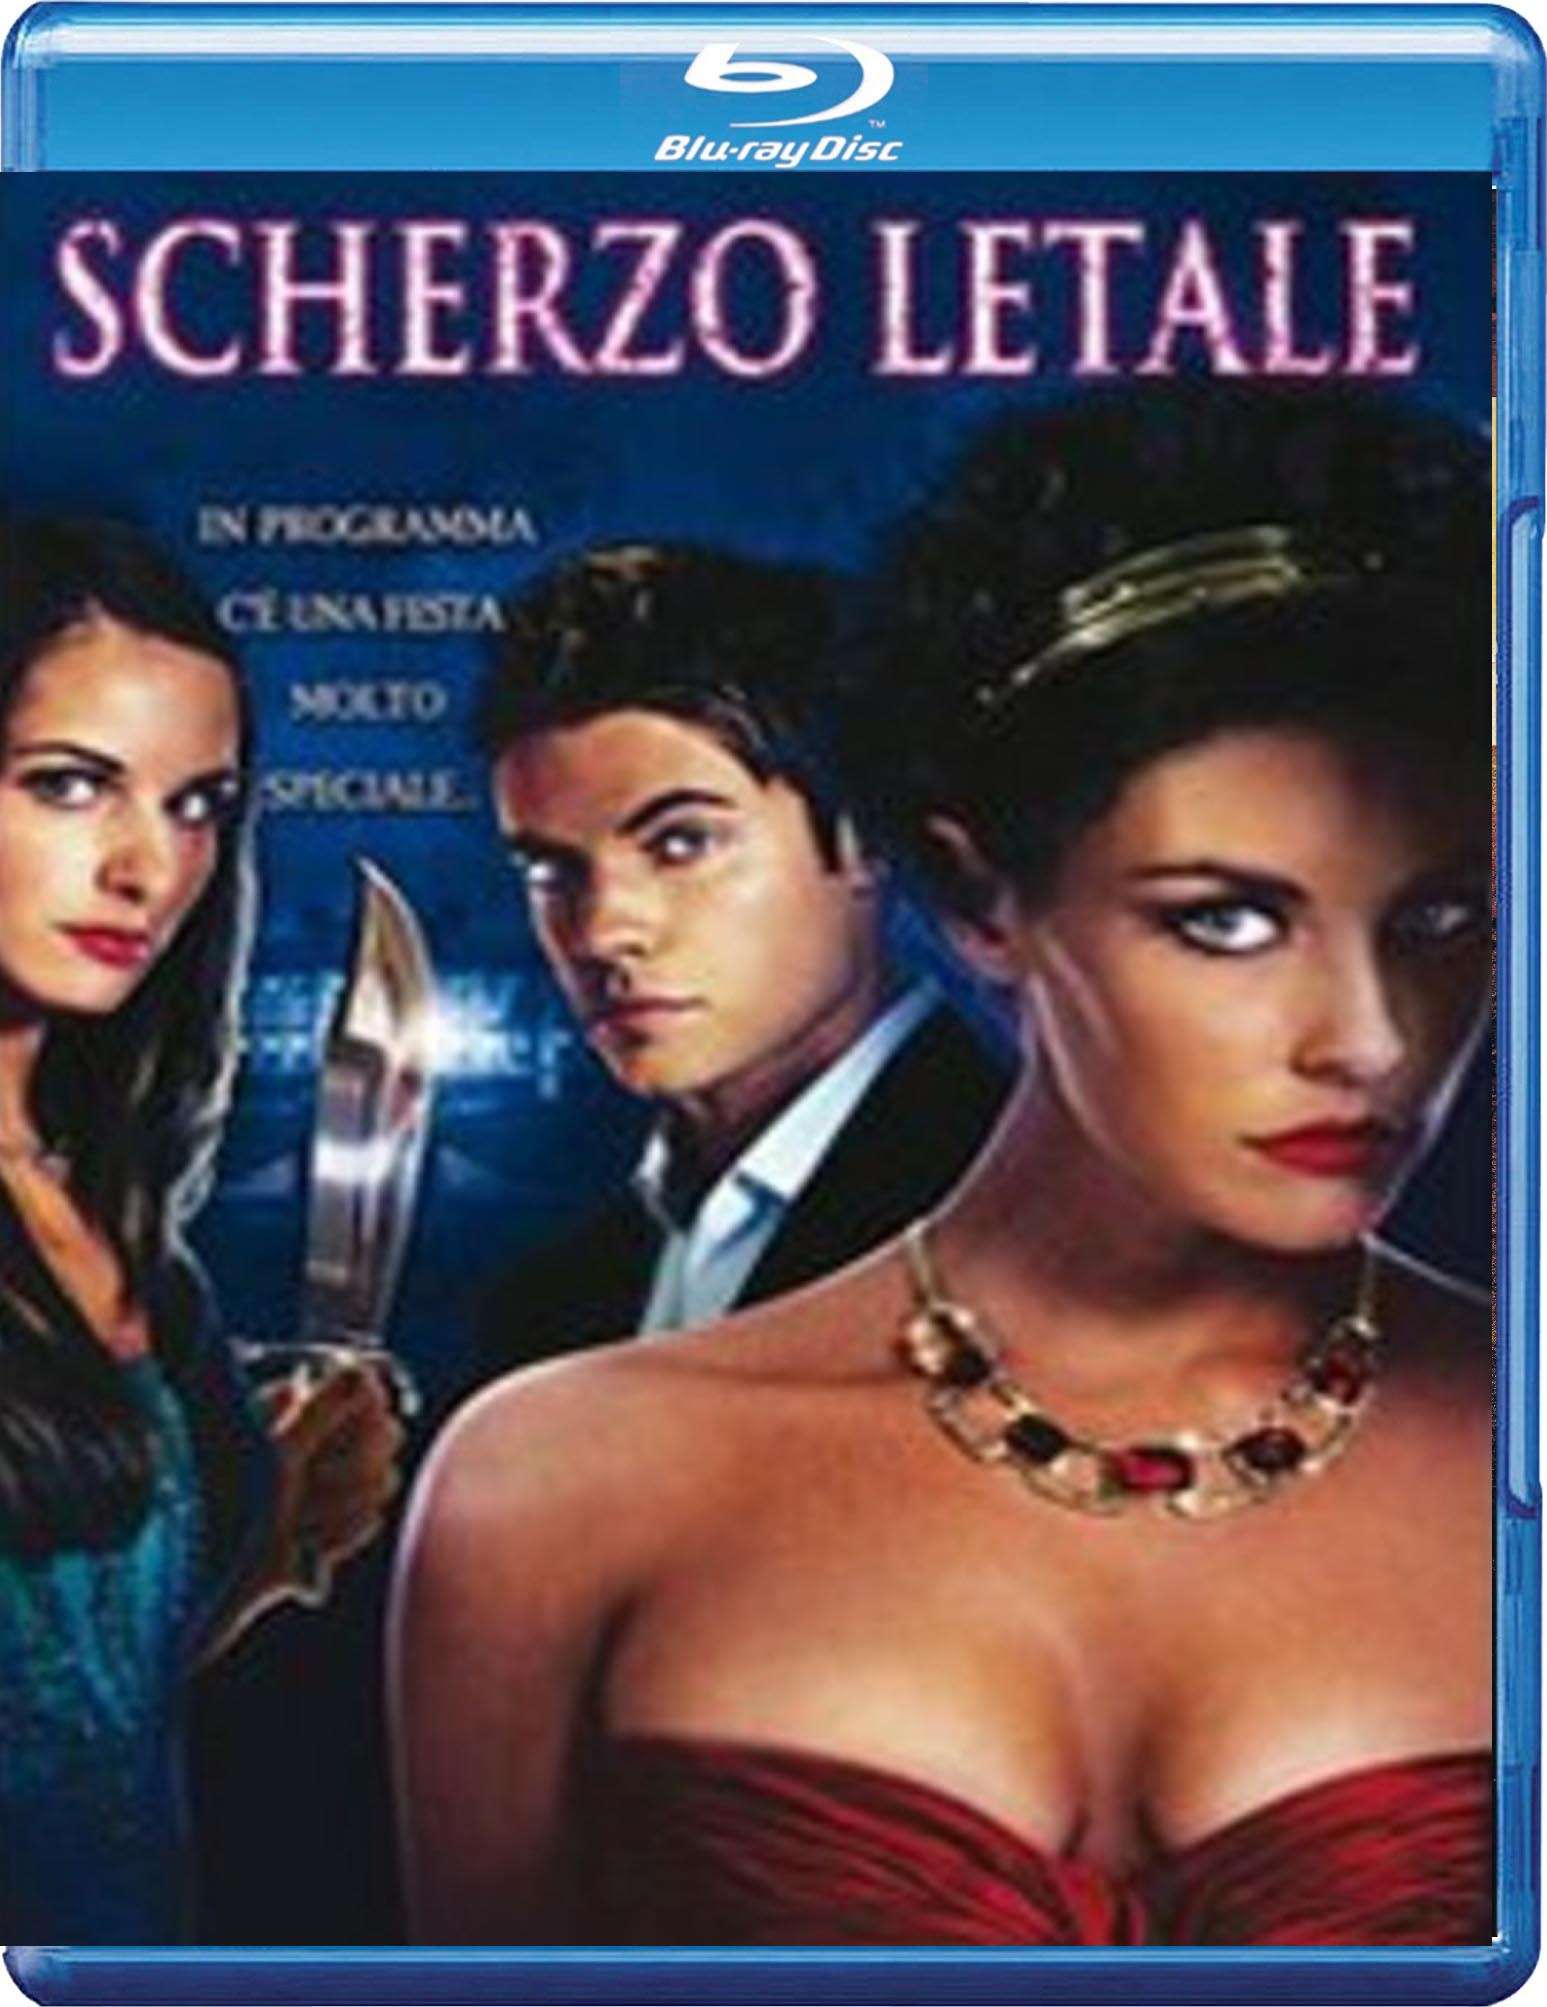 Scherzo letale (2008) HDRip 1080p Ac3 ITA (DVD Resync) ENG Sub ENG - Krikk